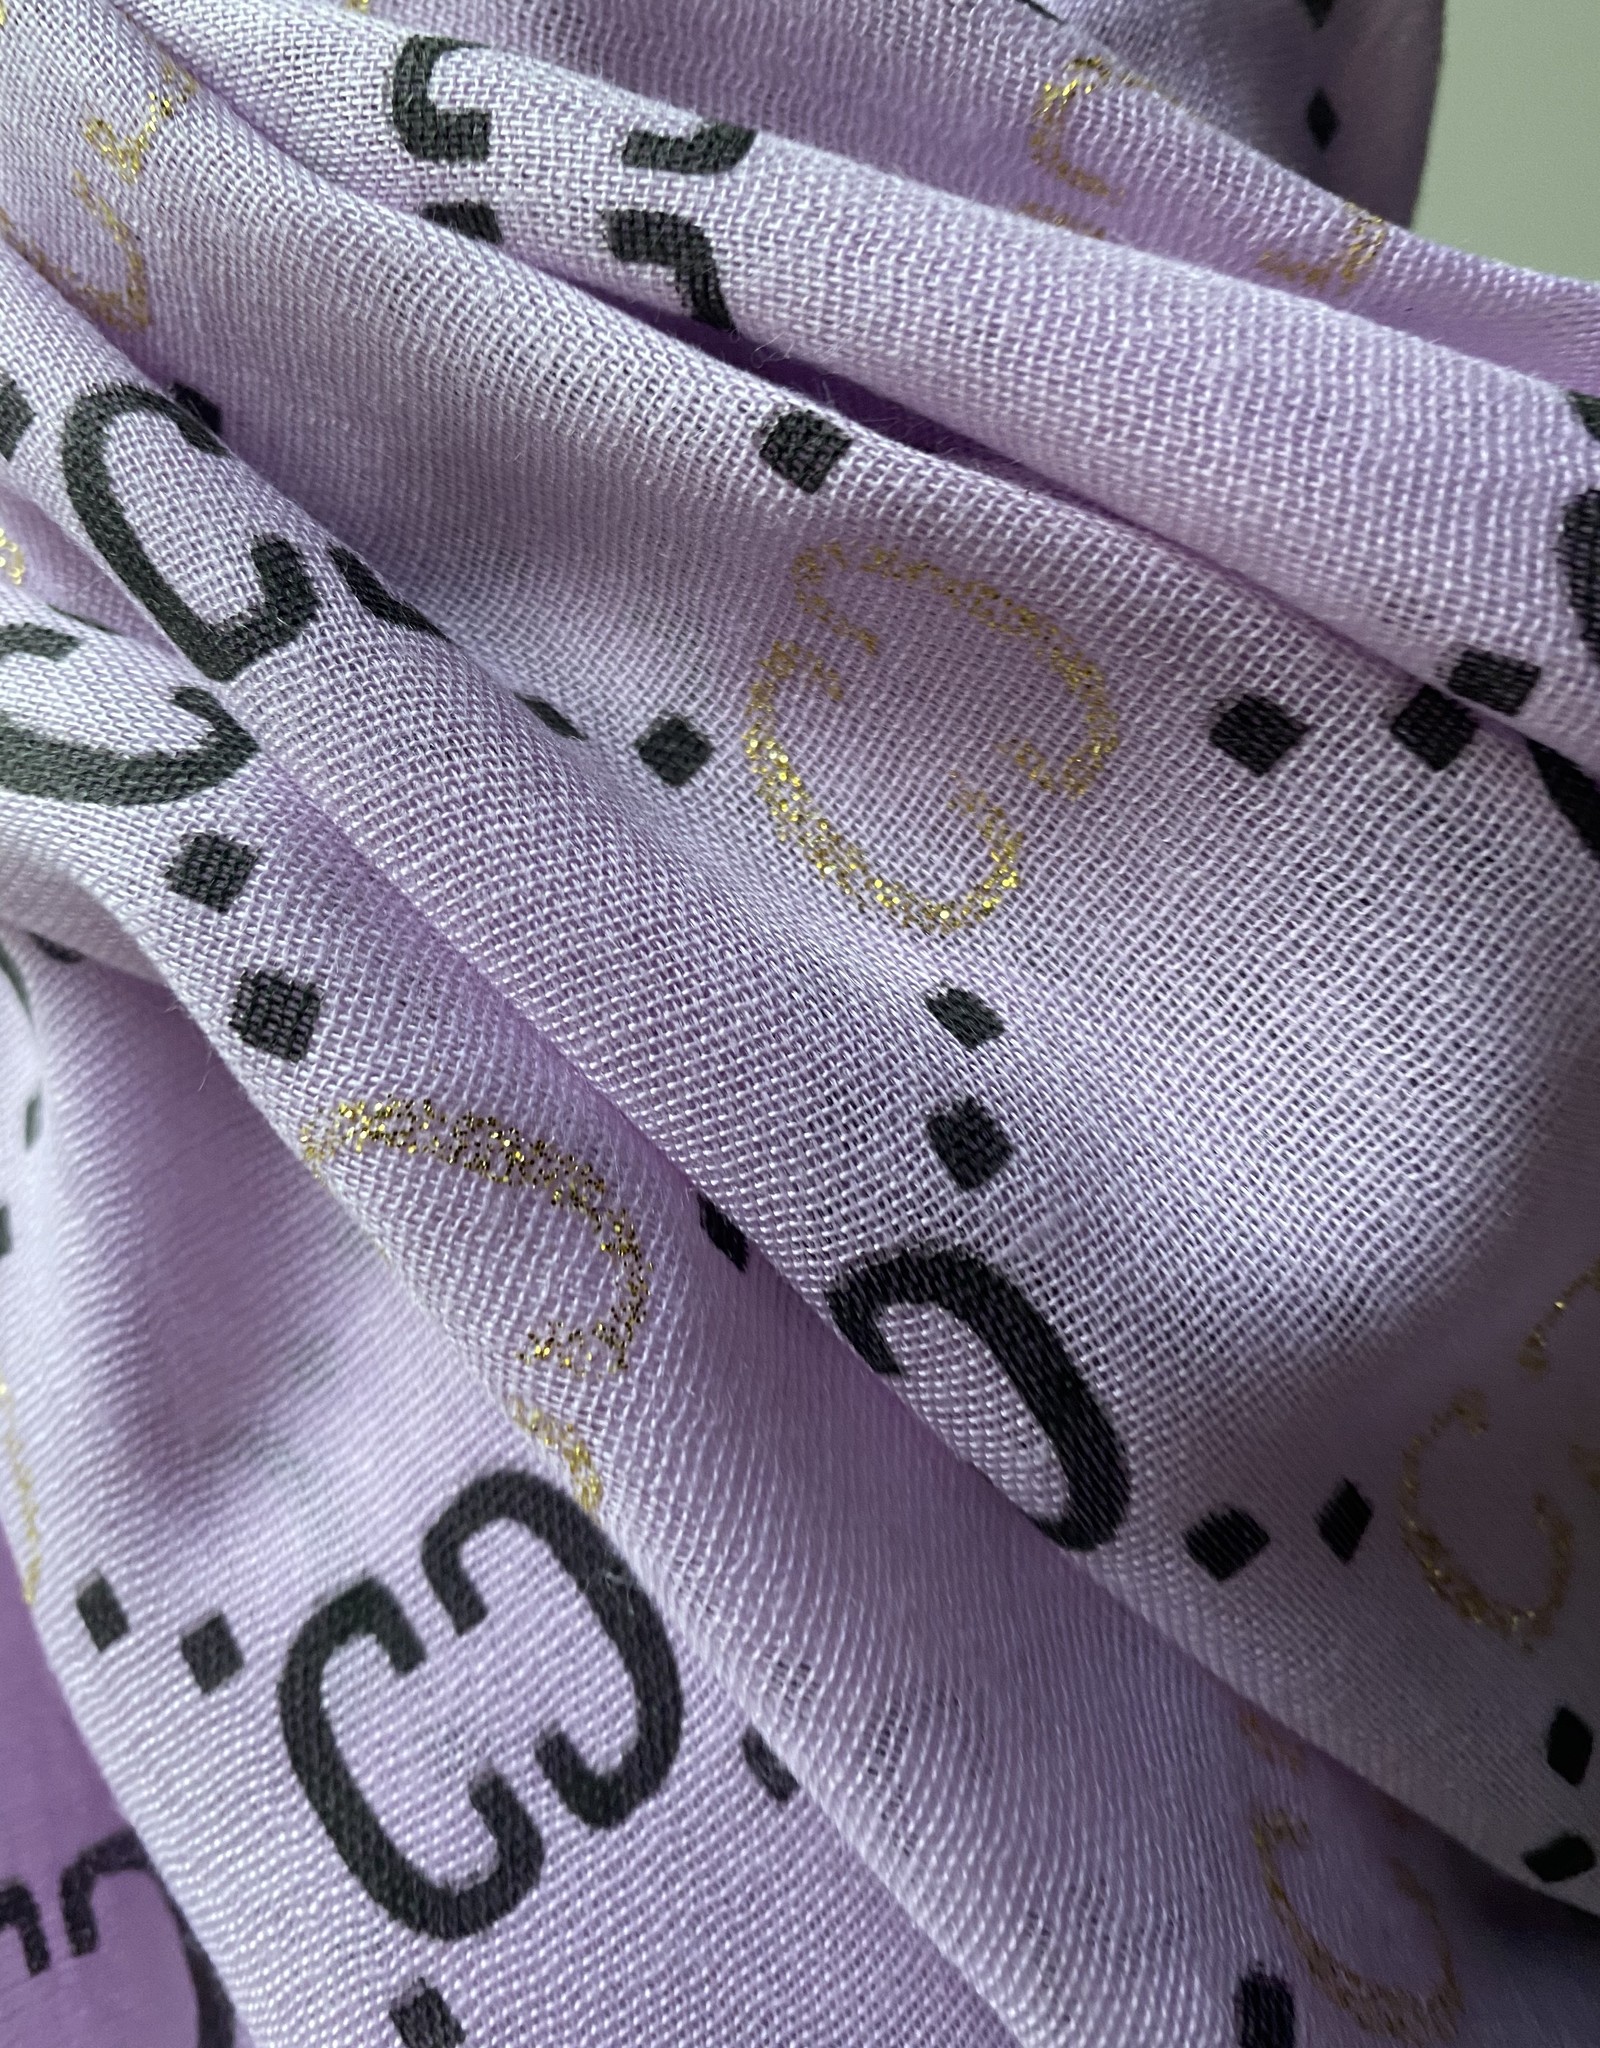 Katoenen paarse sjaal met G logo, logo in zwart en goud